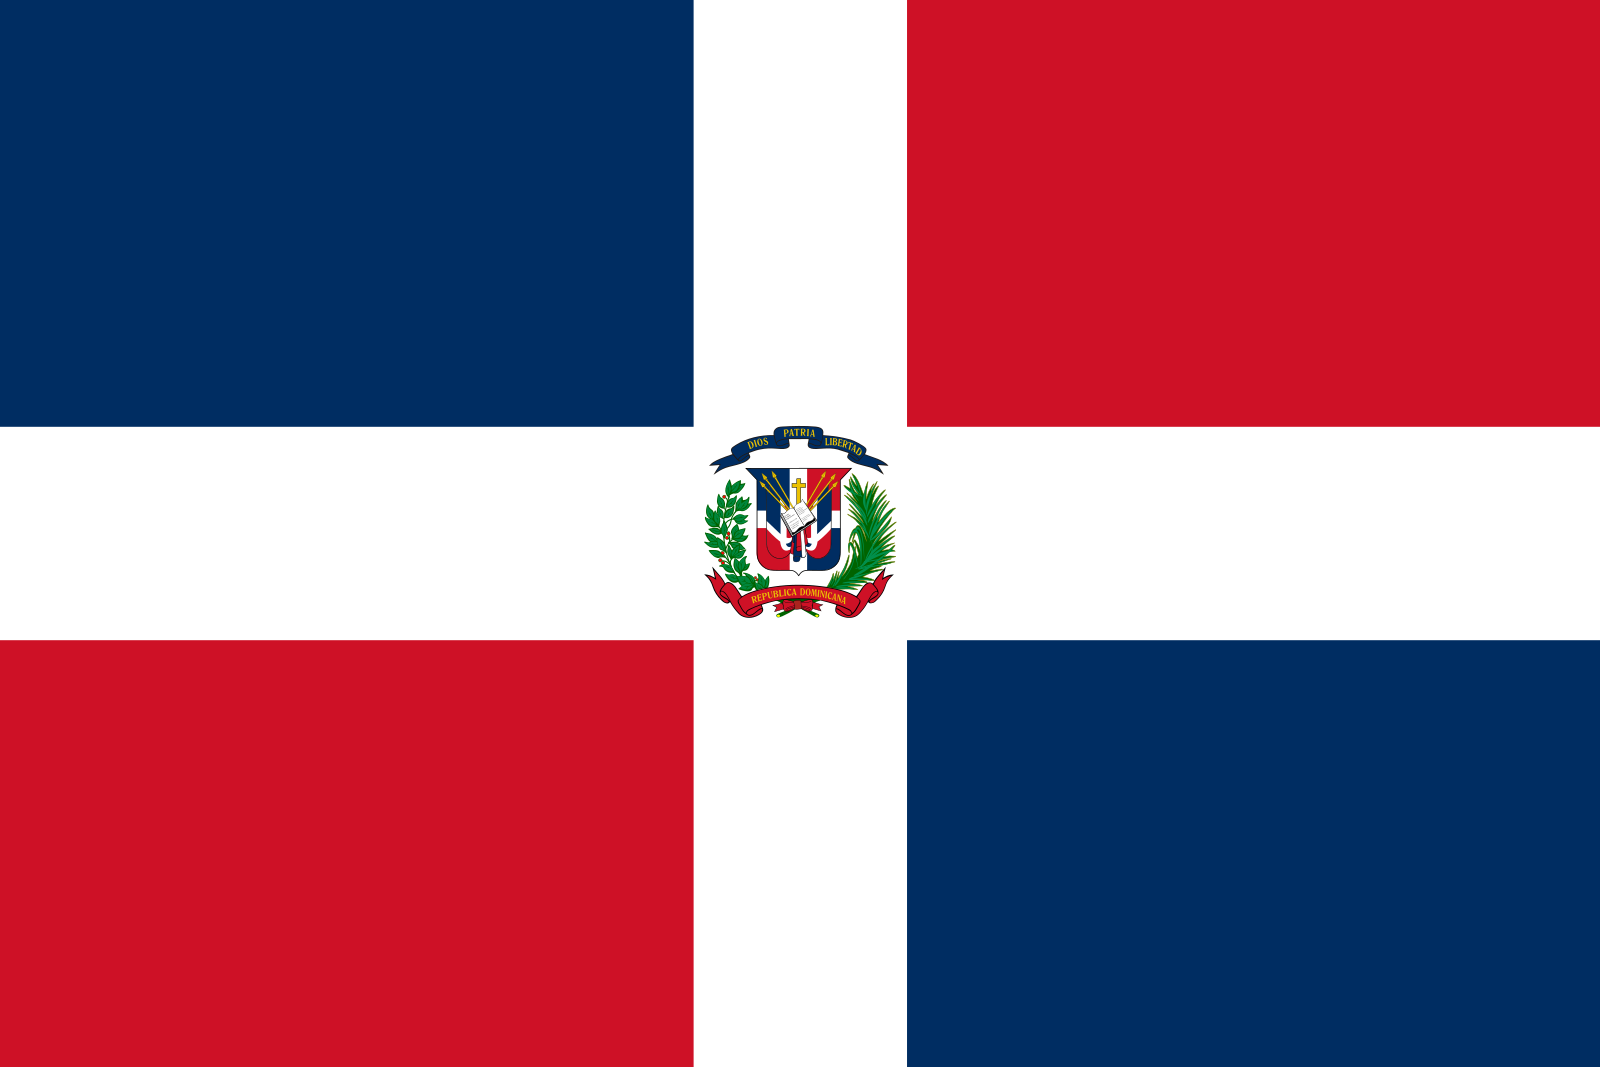 bandeira republica dominicana 1 - Bandeira da República Dominicana